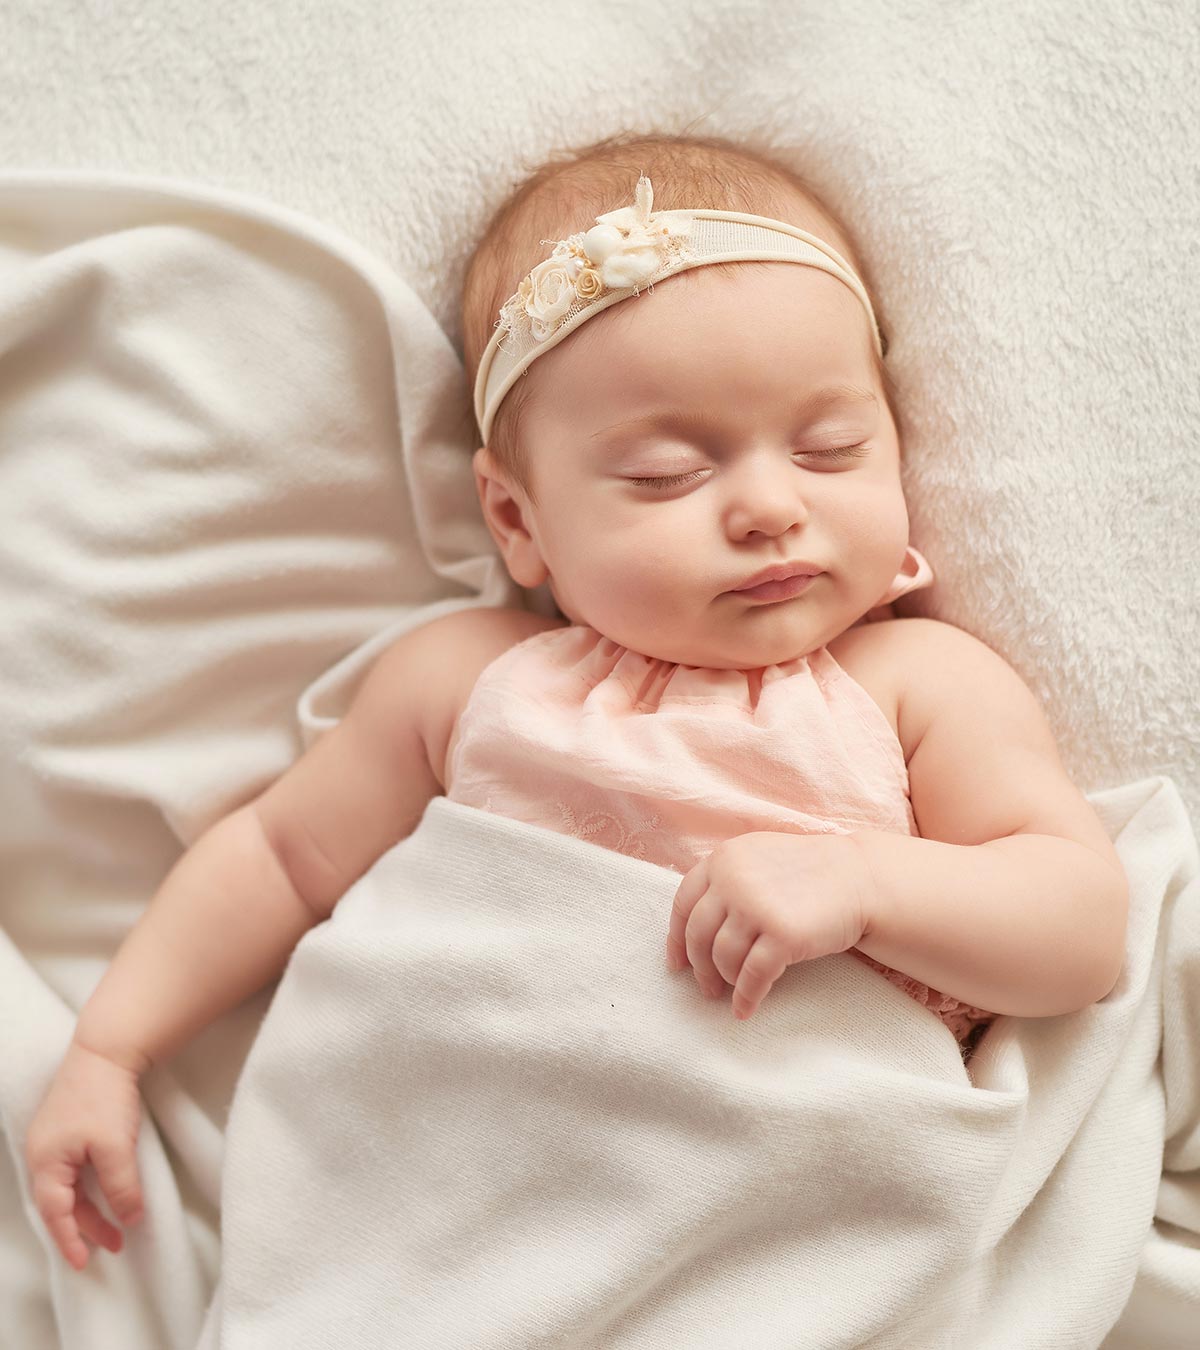 13个婴儿睡眠提示:如何识别它们以及让婴儿入睡的提示